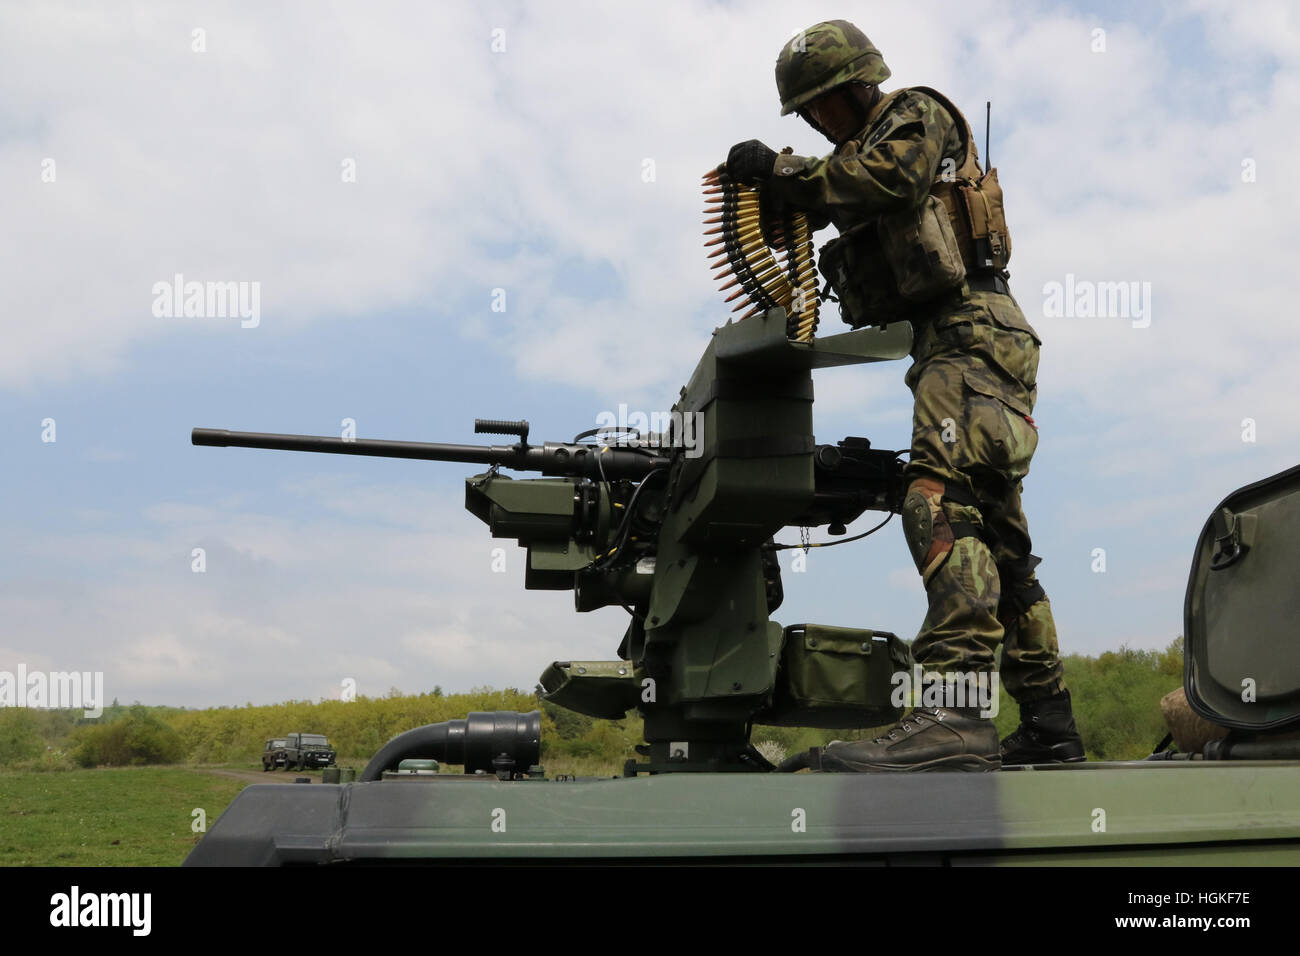 Iveco LMV armoured vehicle Stock Photo